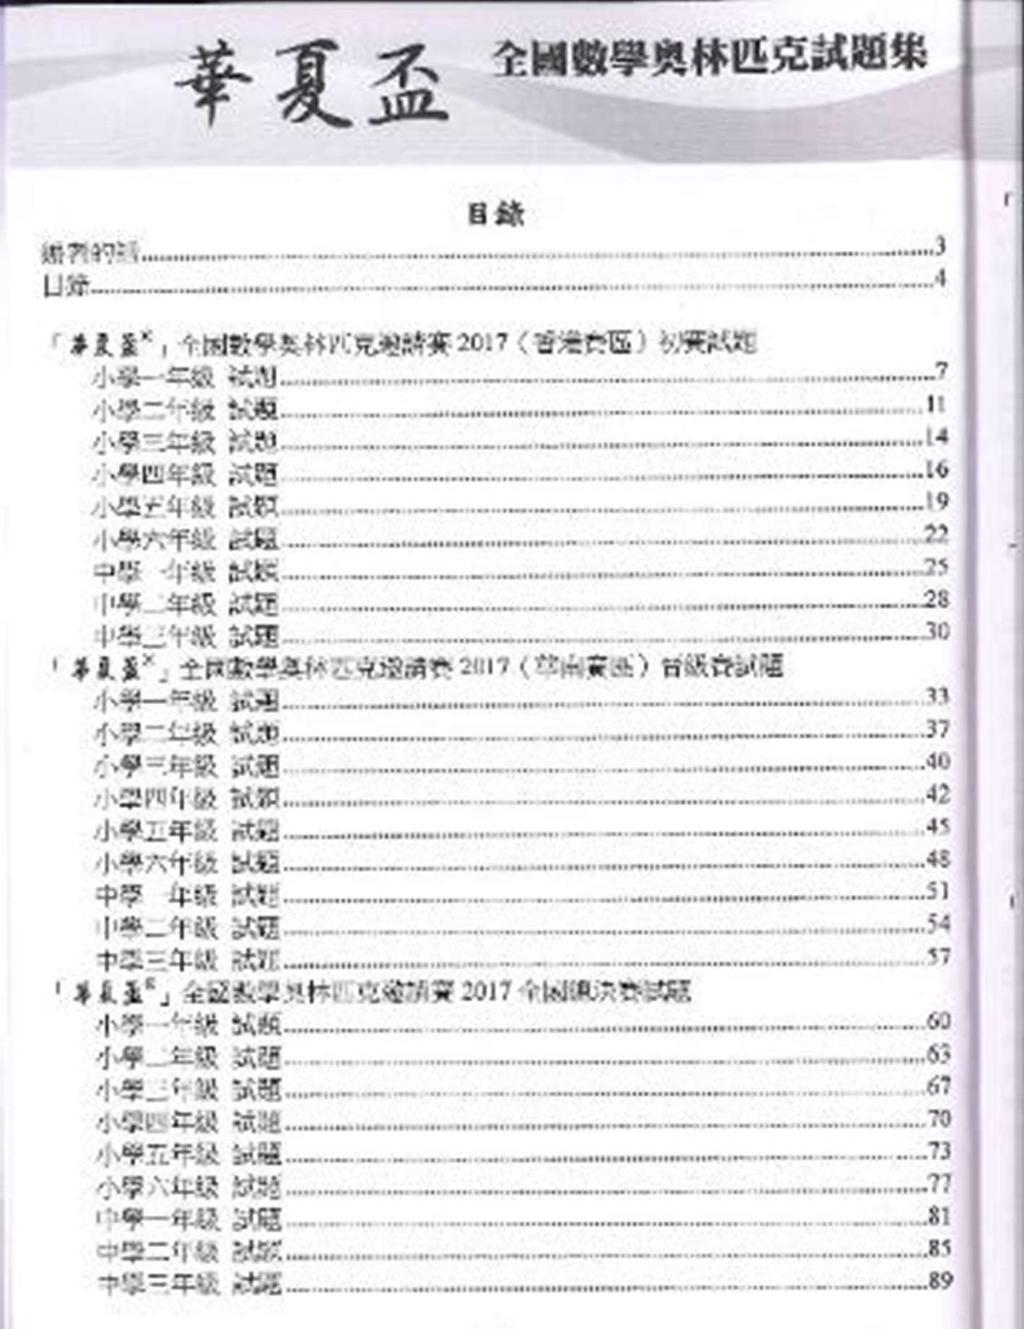 1.6 書籍名稱 華夏盃 全國數學奧林匹克試題集 2017 年版